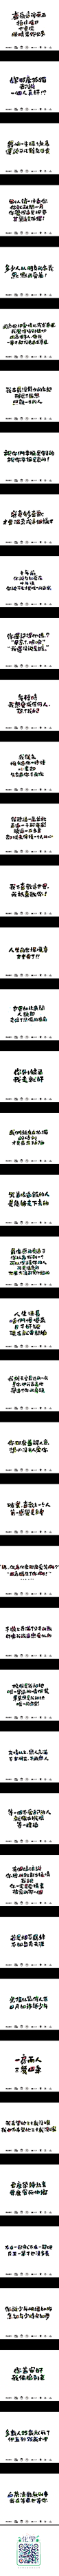 那些触动心底的文字_字体传奇网-中国首个字体品牌设计师交流网 #字体#